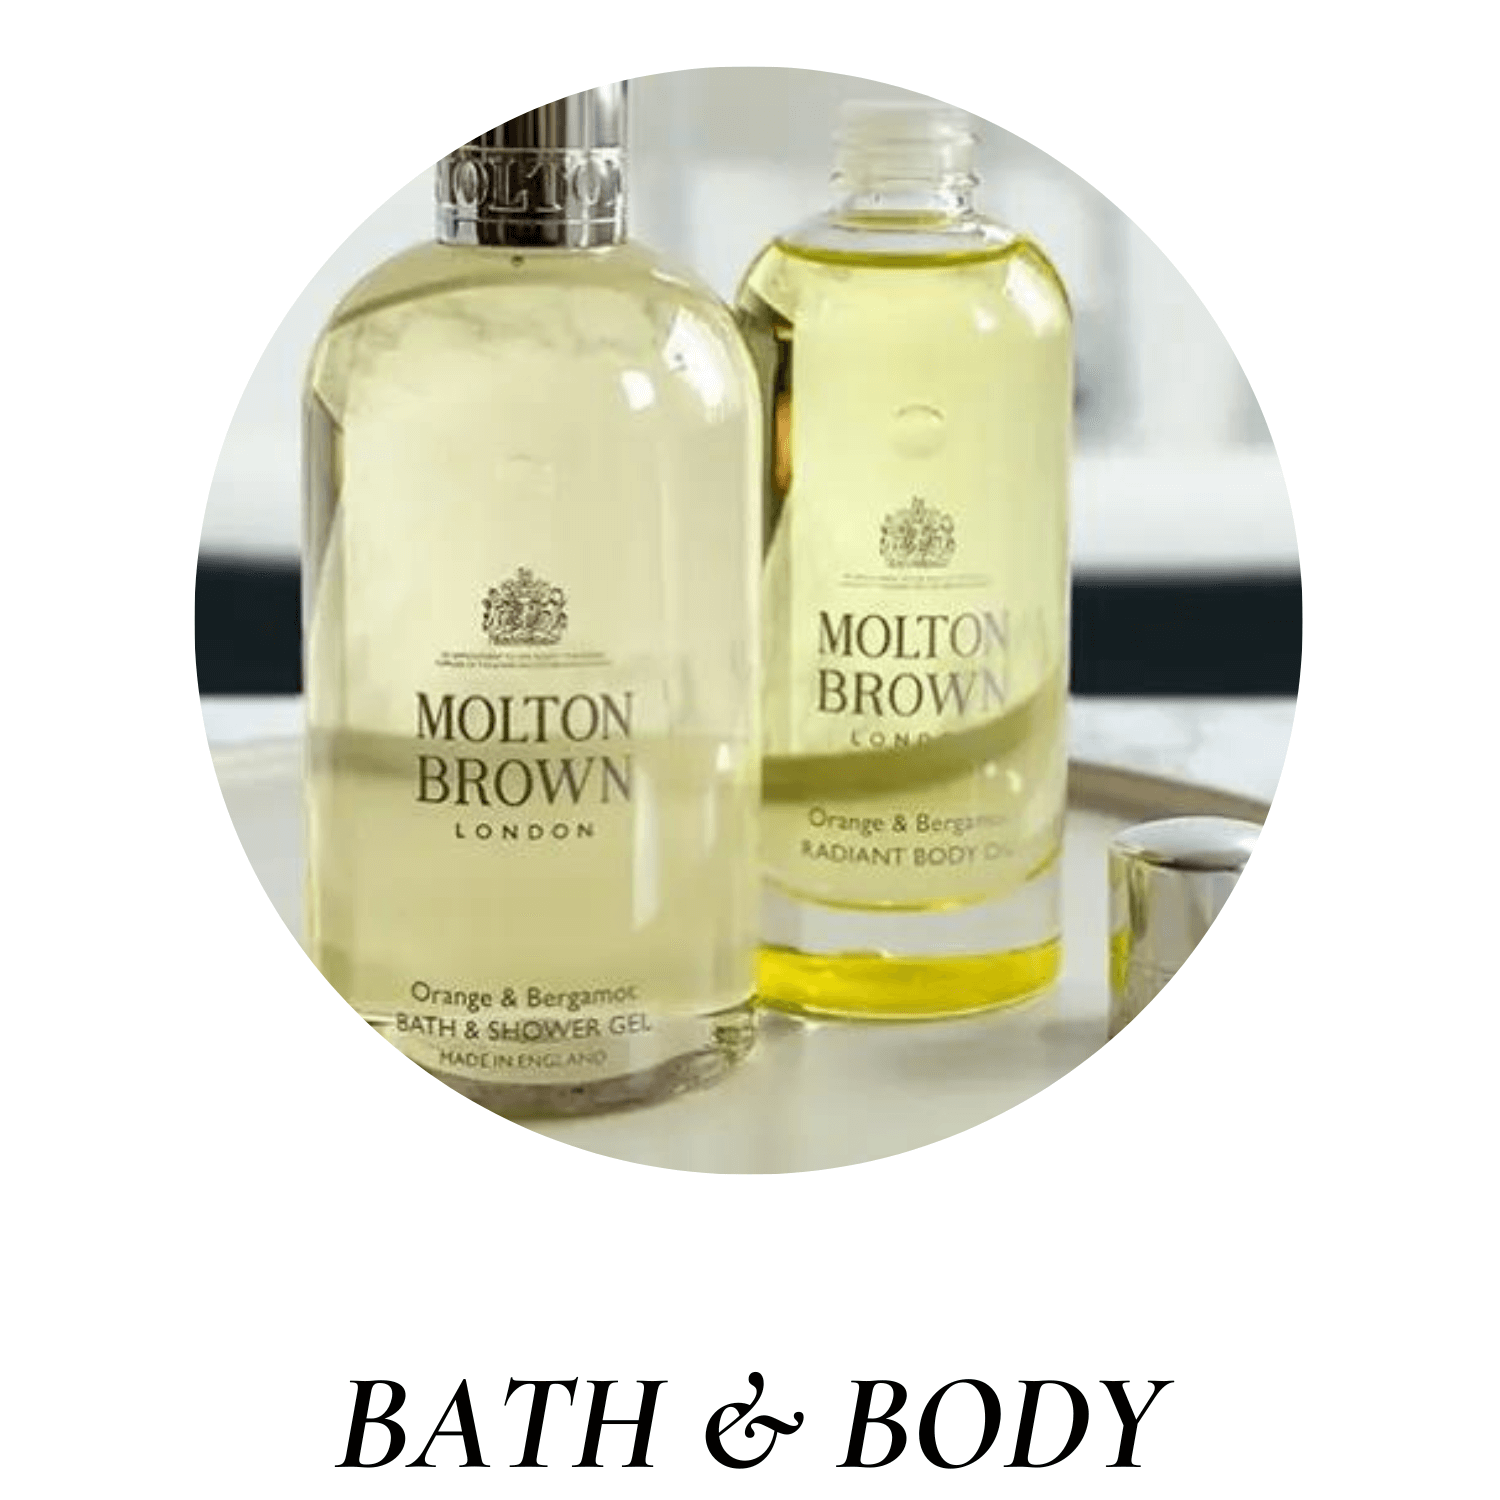 Molton brown bath and body